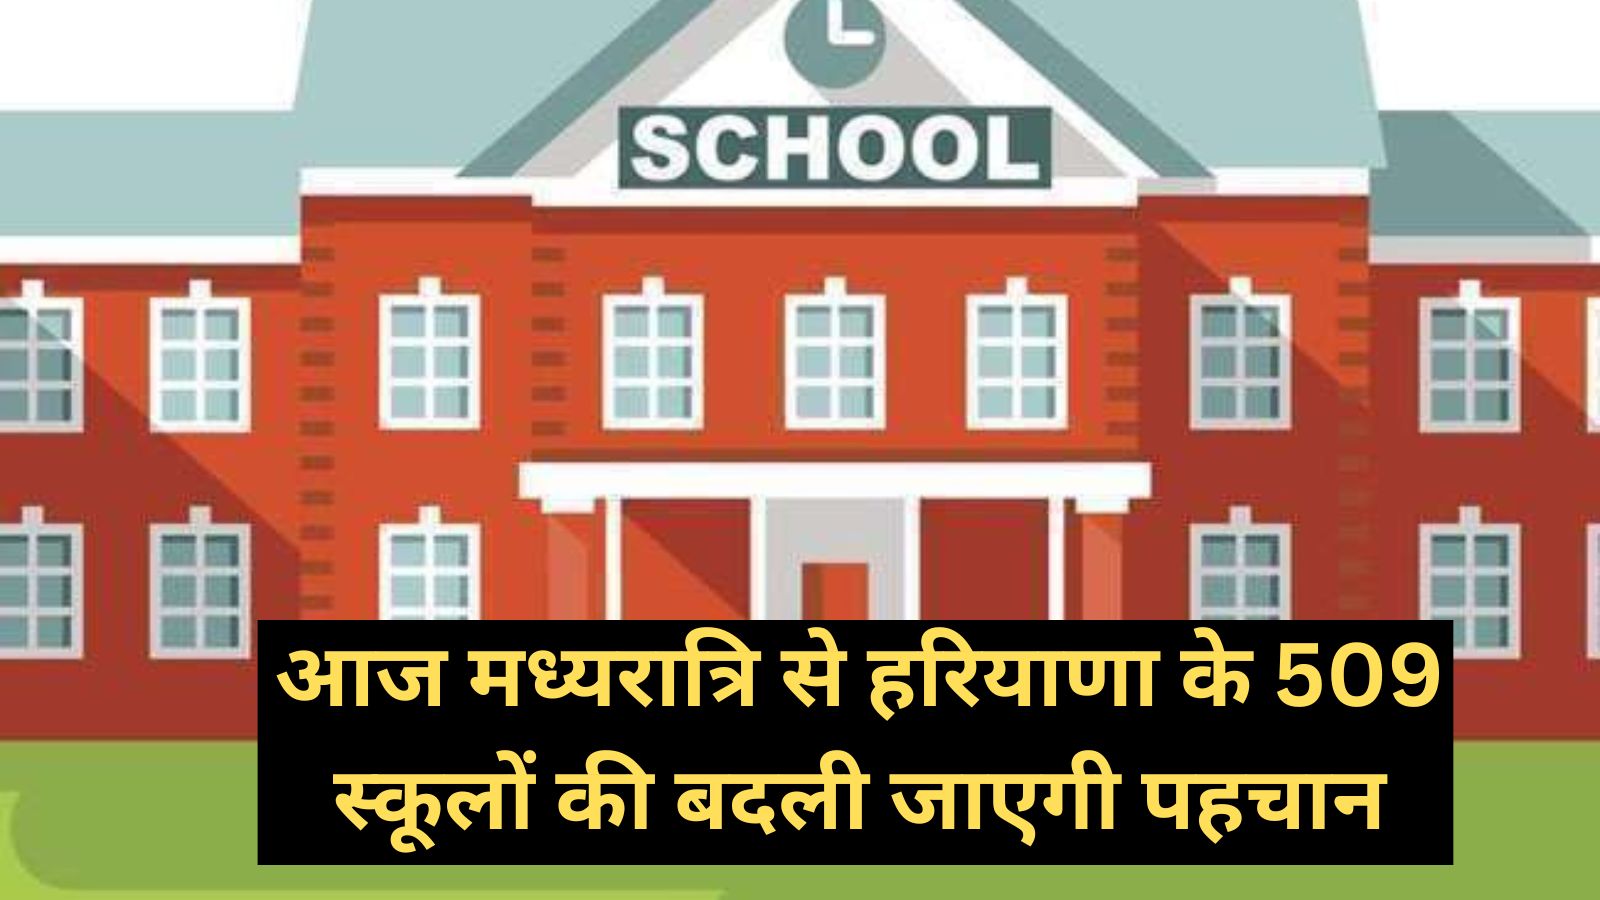 Haryana News :आज मध्यरात्रि से हरियाणा के 509 स्कूलों की बदली जाएगी पहचान, अब इस नाम से जाने जाएंगे स्कूल,